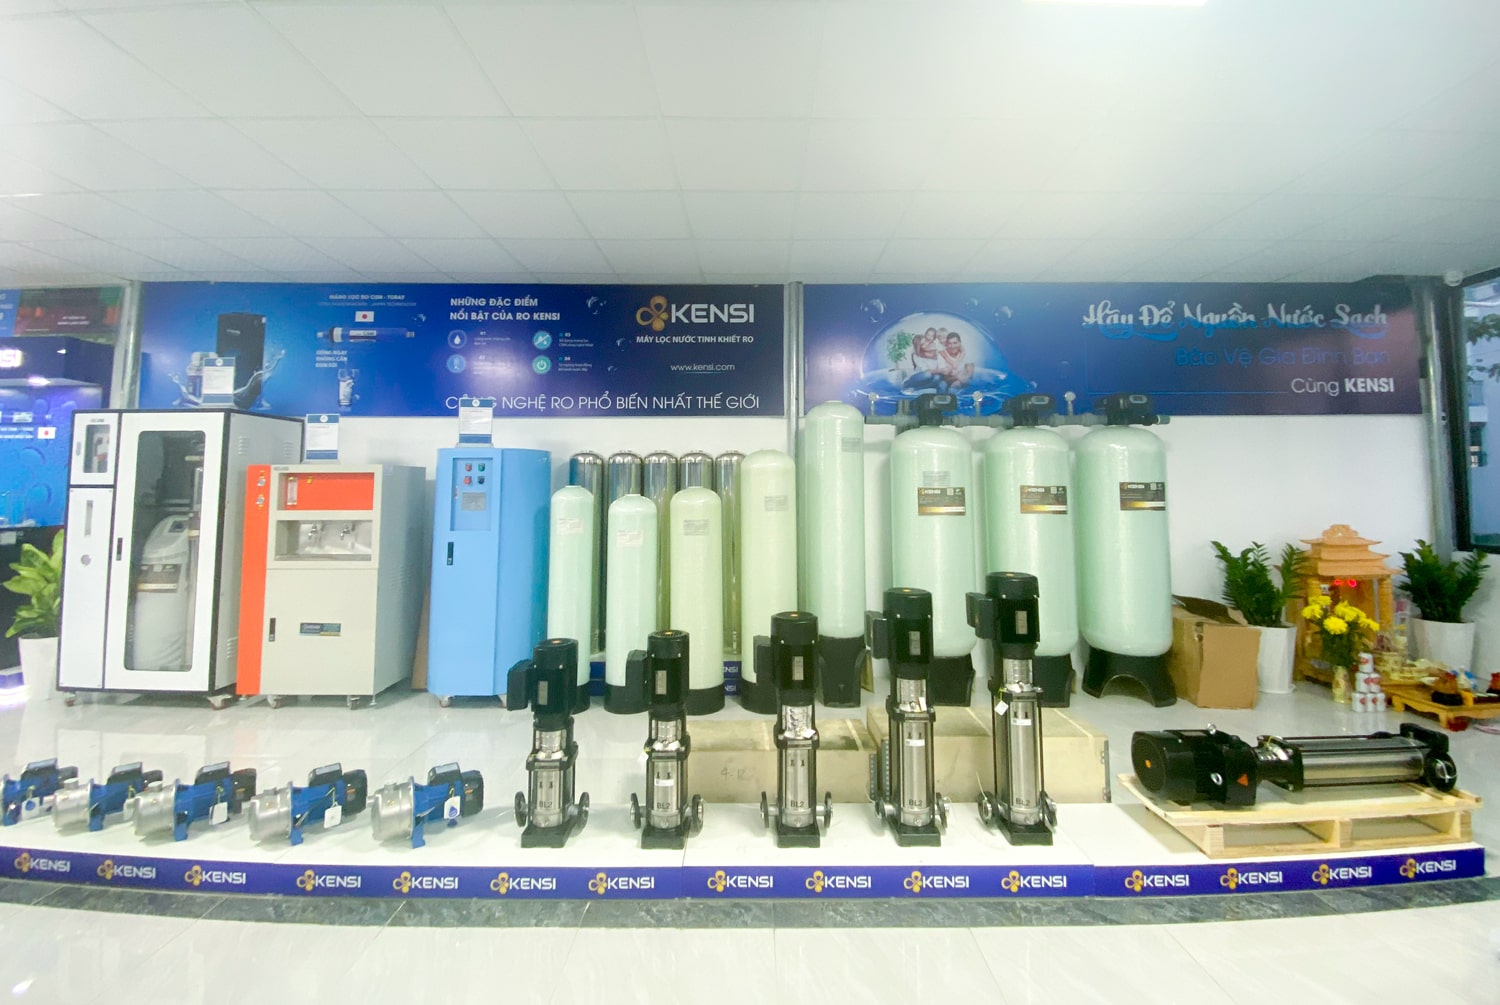 Hanawa phân phối máy lọc nước chính hãng Kensi